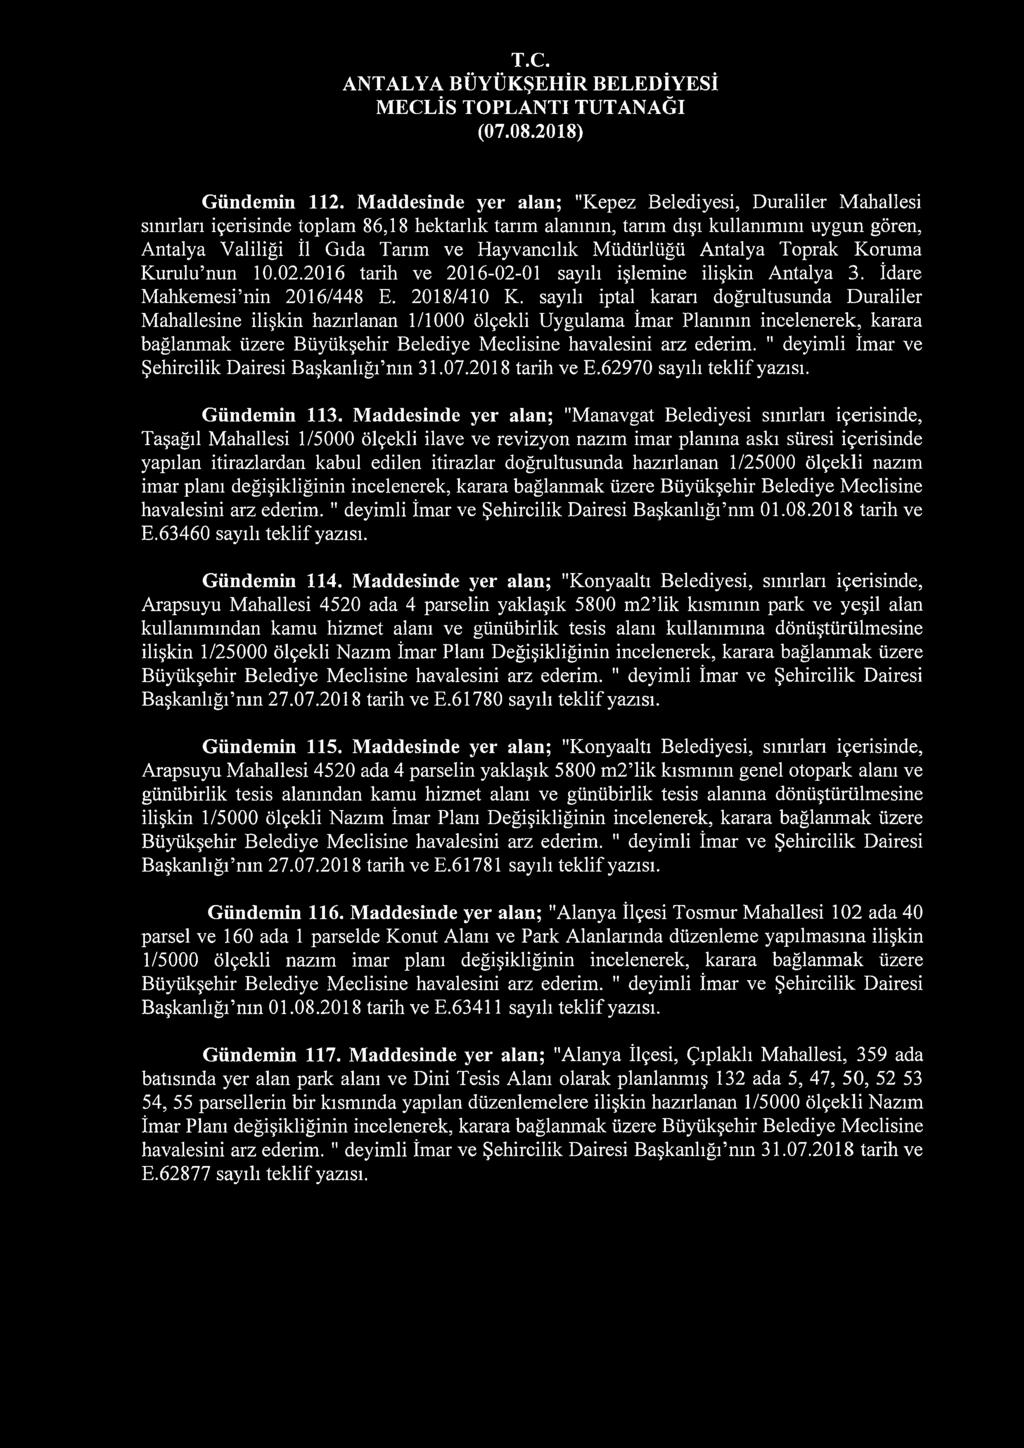 Hayvancılık Müdürlüğü Antalya Toprak Koruma Kurulu nun 10.02.2016 tarih ve 2016-02-01 sayılı işlemine ilişkin Antalya 3. İdare Mahkemesi nin 2016/448 E. 2018/410 K.